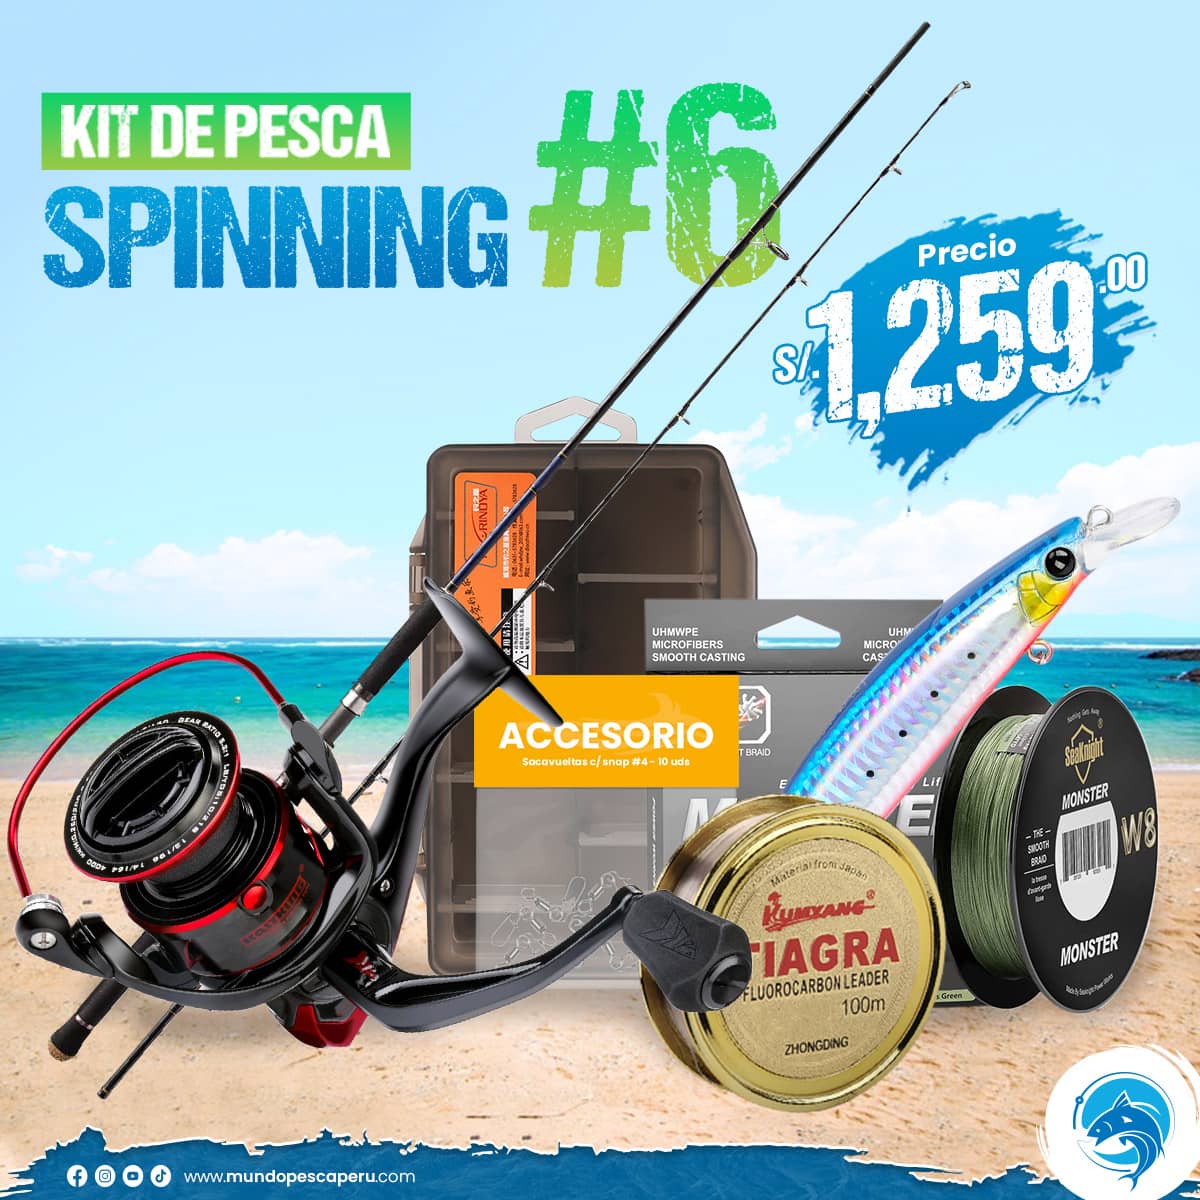 Original solamente Inolvidable Kit de Pesca MP® SPINNING #6 - Tienda de artículos de pesca deportiva en  Peru – Mundo Pesca Peru